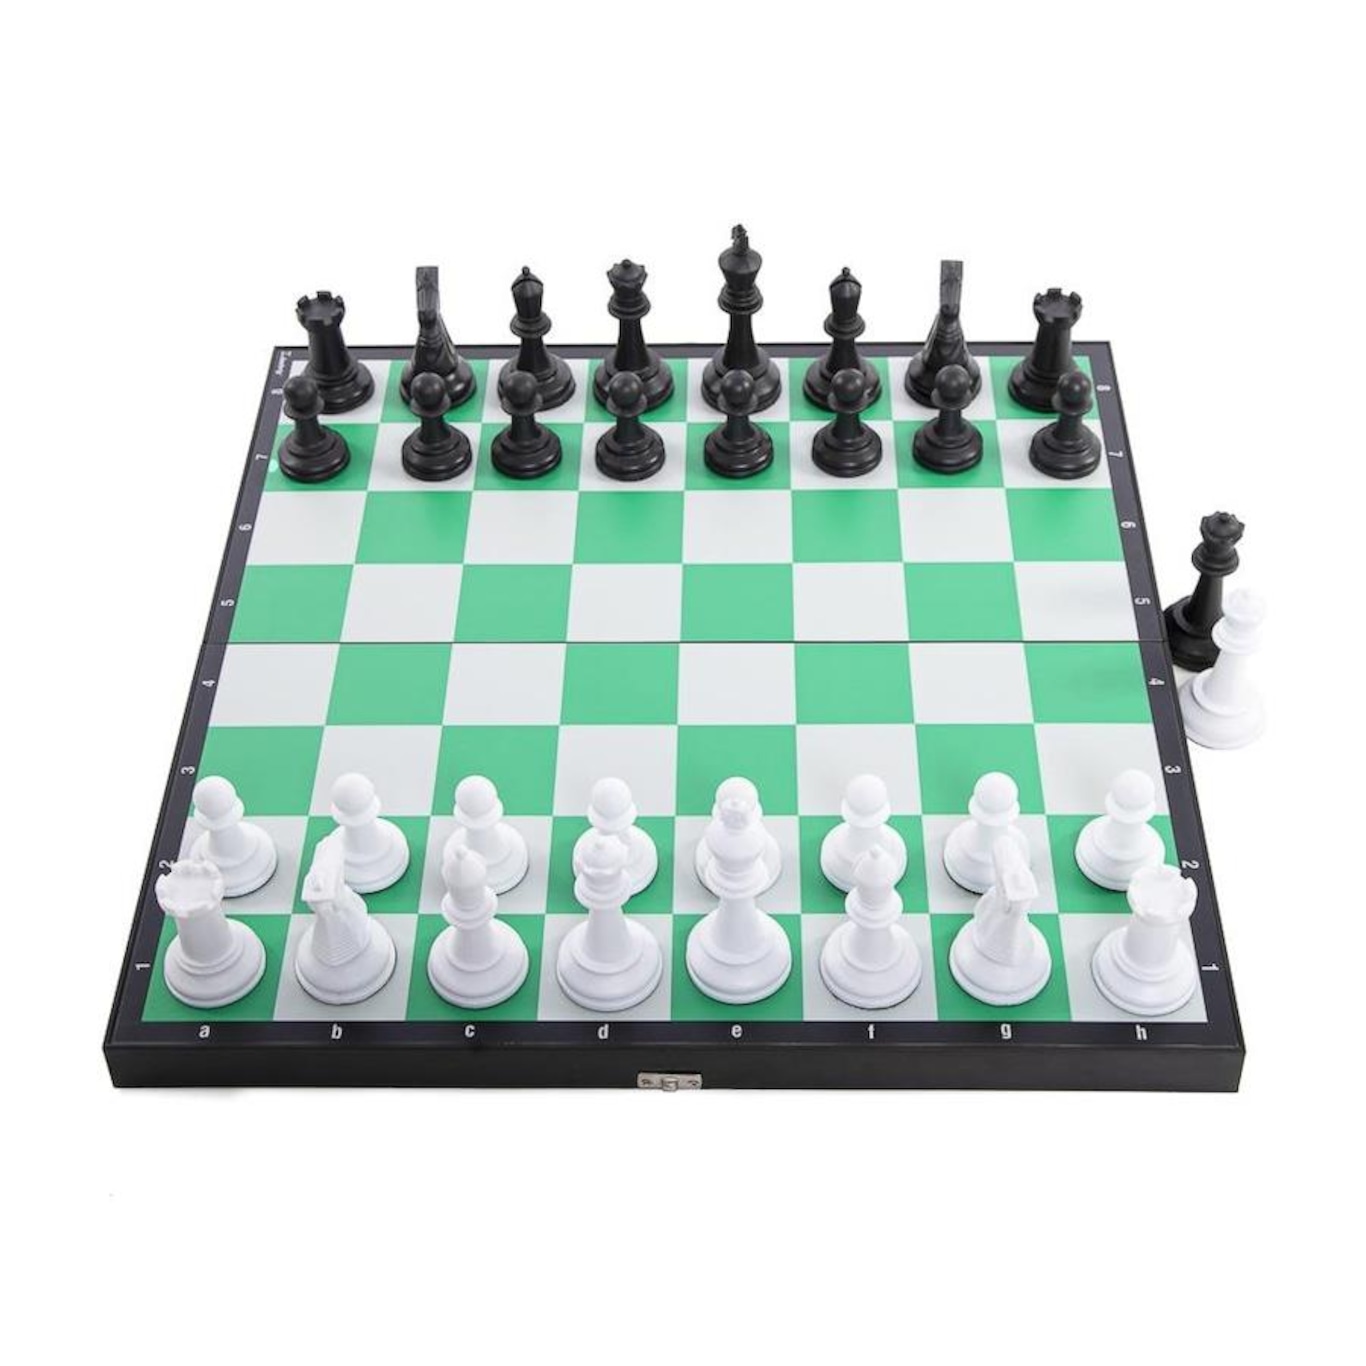 E mais outro aplicativo para jogar xadrez 3D: Champion Chess